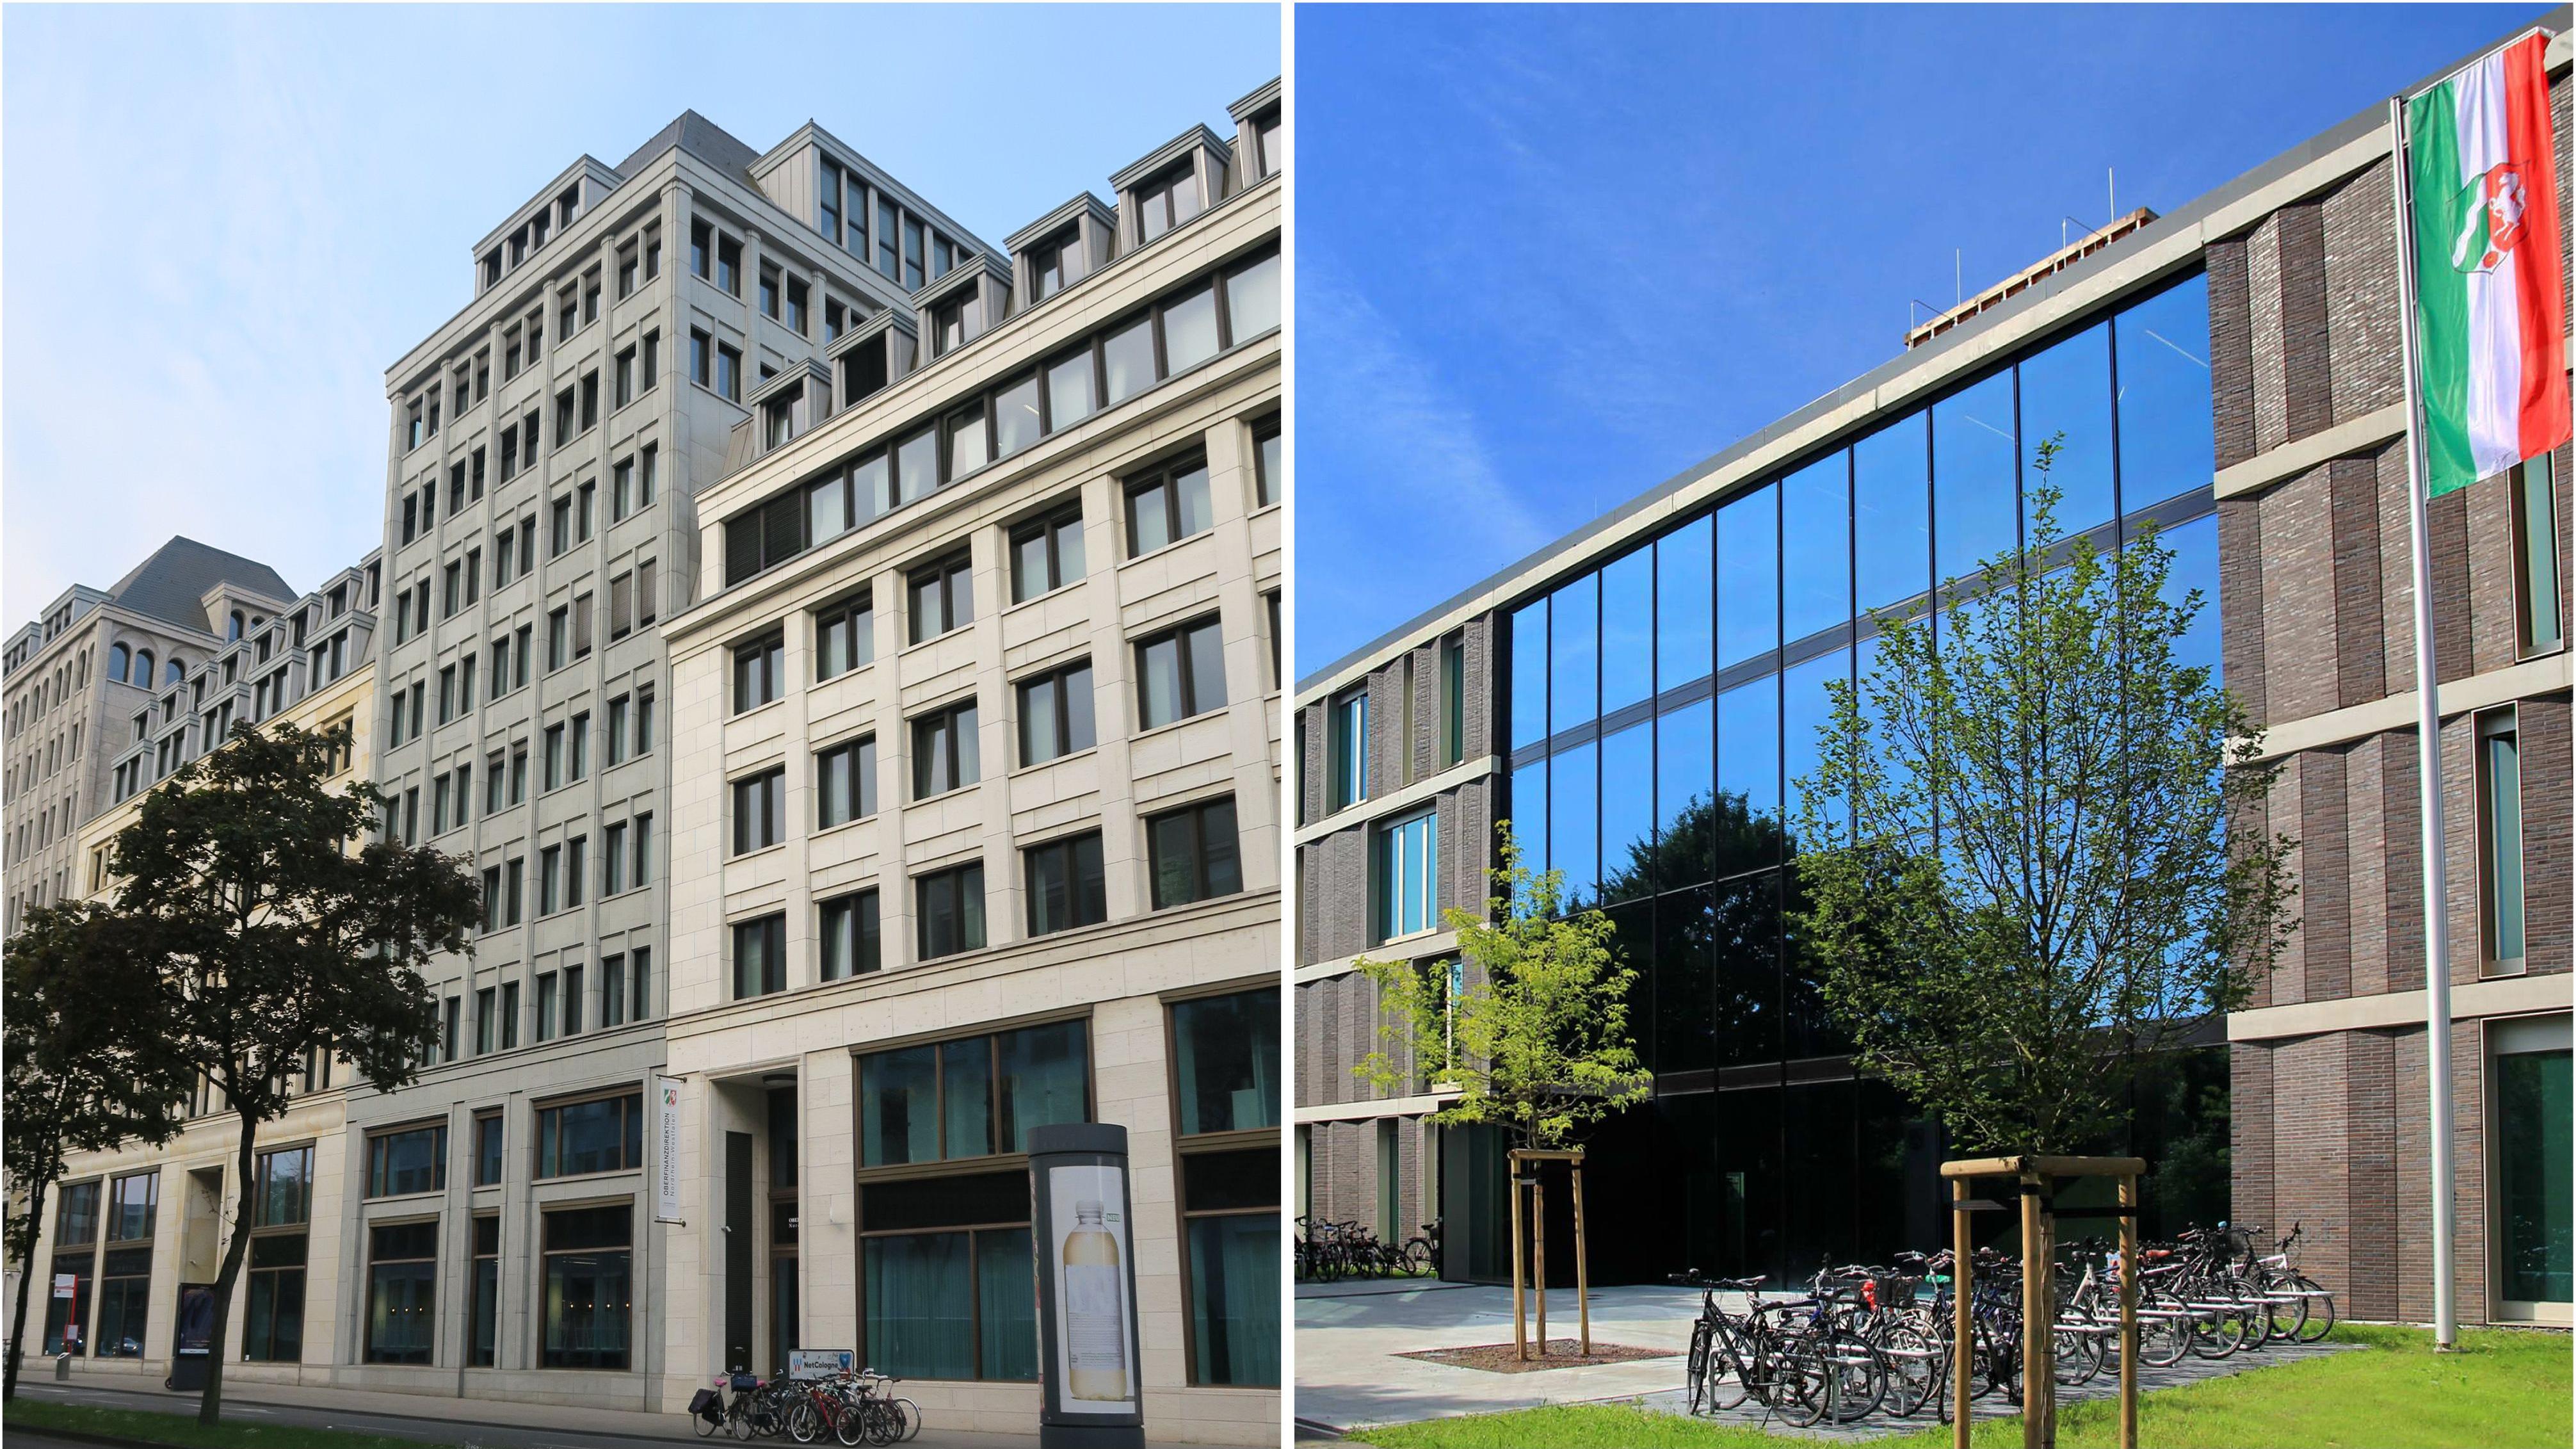 Stimmungsbild zum Beitrag: Es wird links das Gebäude der OFD in Köln und rechts das Gebäude der OFD in Münster abgebildet.